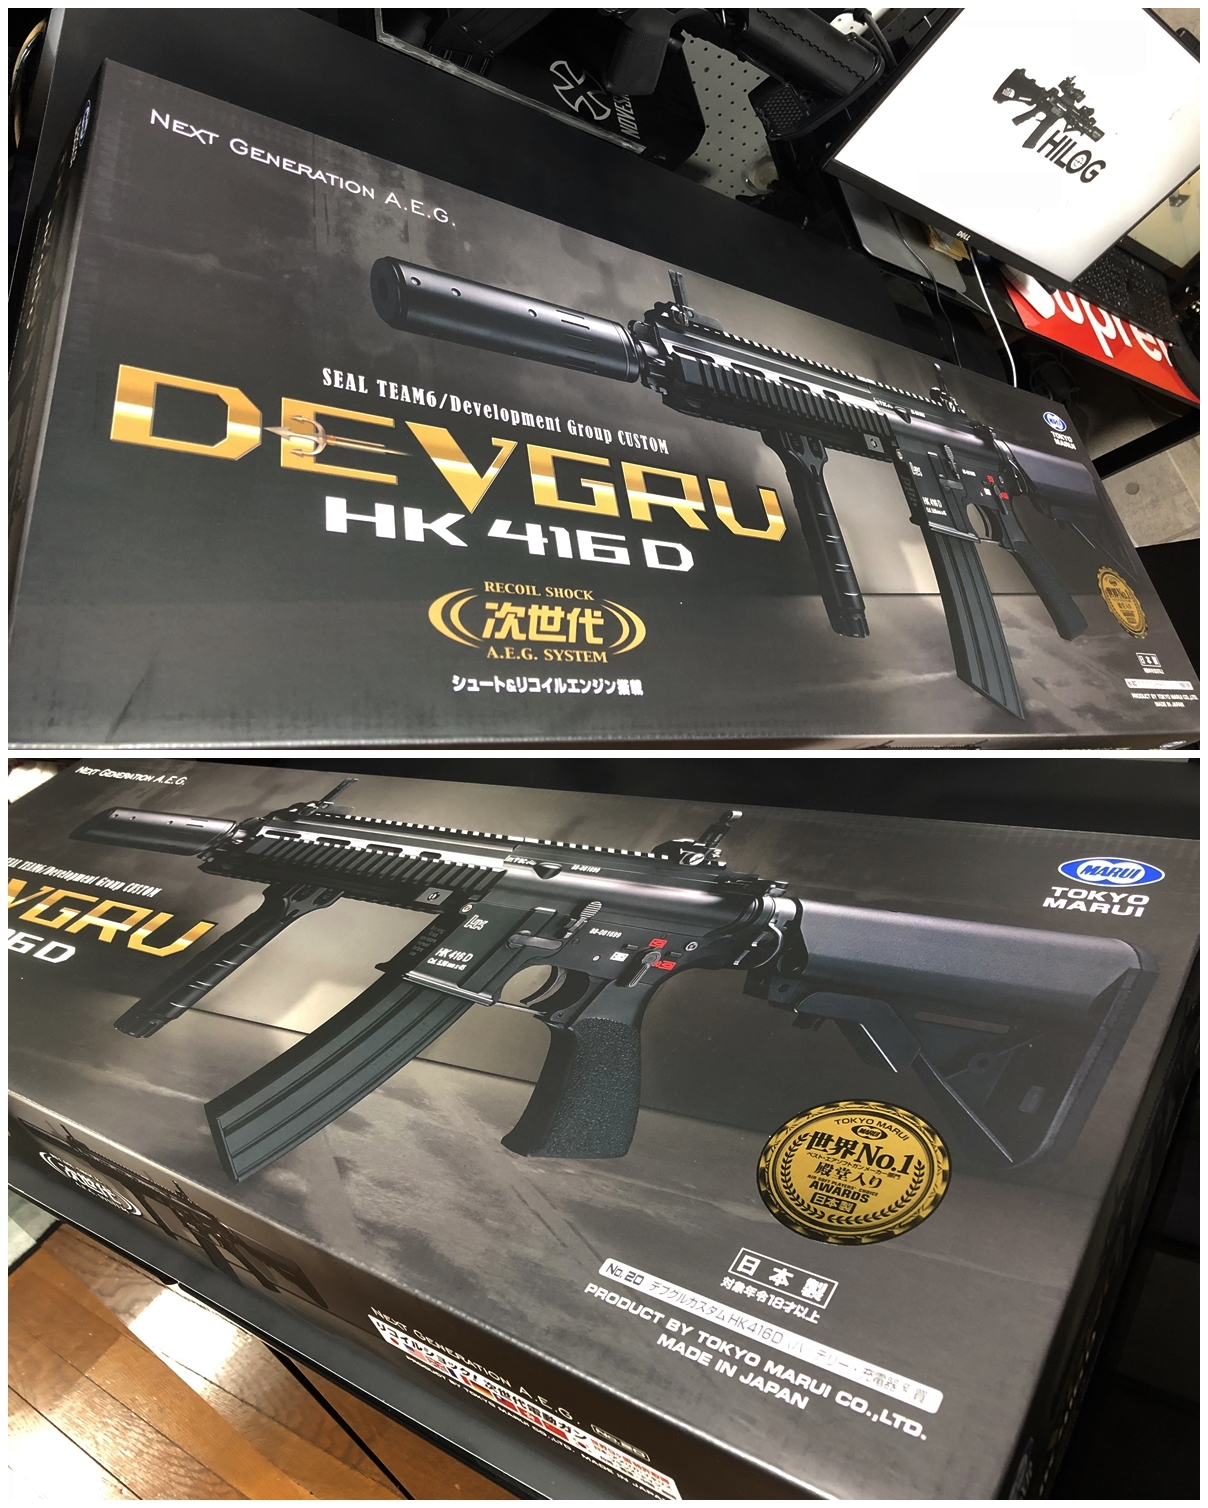 1 東京マルイ 次世代電動ガン HK416D DEVGRU デブグル アメリカ海軍特殊部隊 DEVGRU Seal Team6 新品 箱出し カスタム お勧めパーツ 取付 レビュー